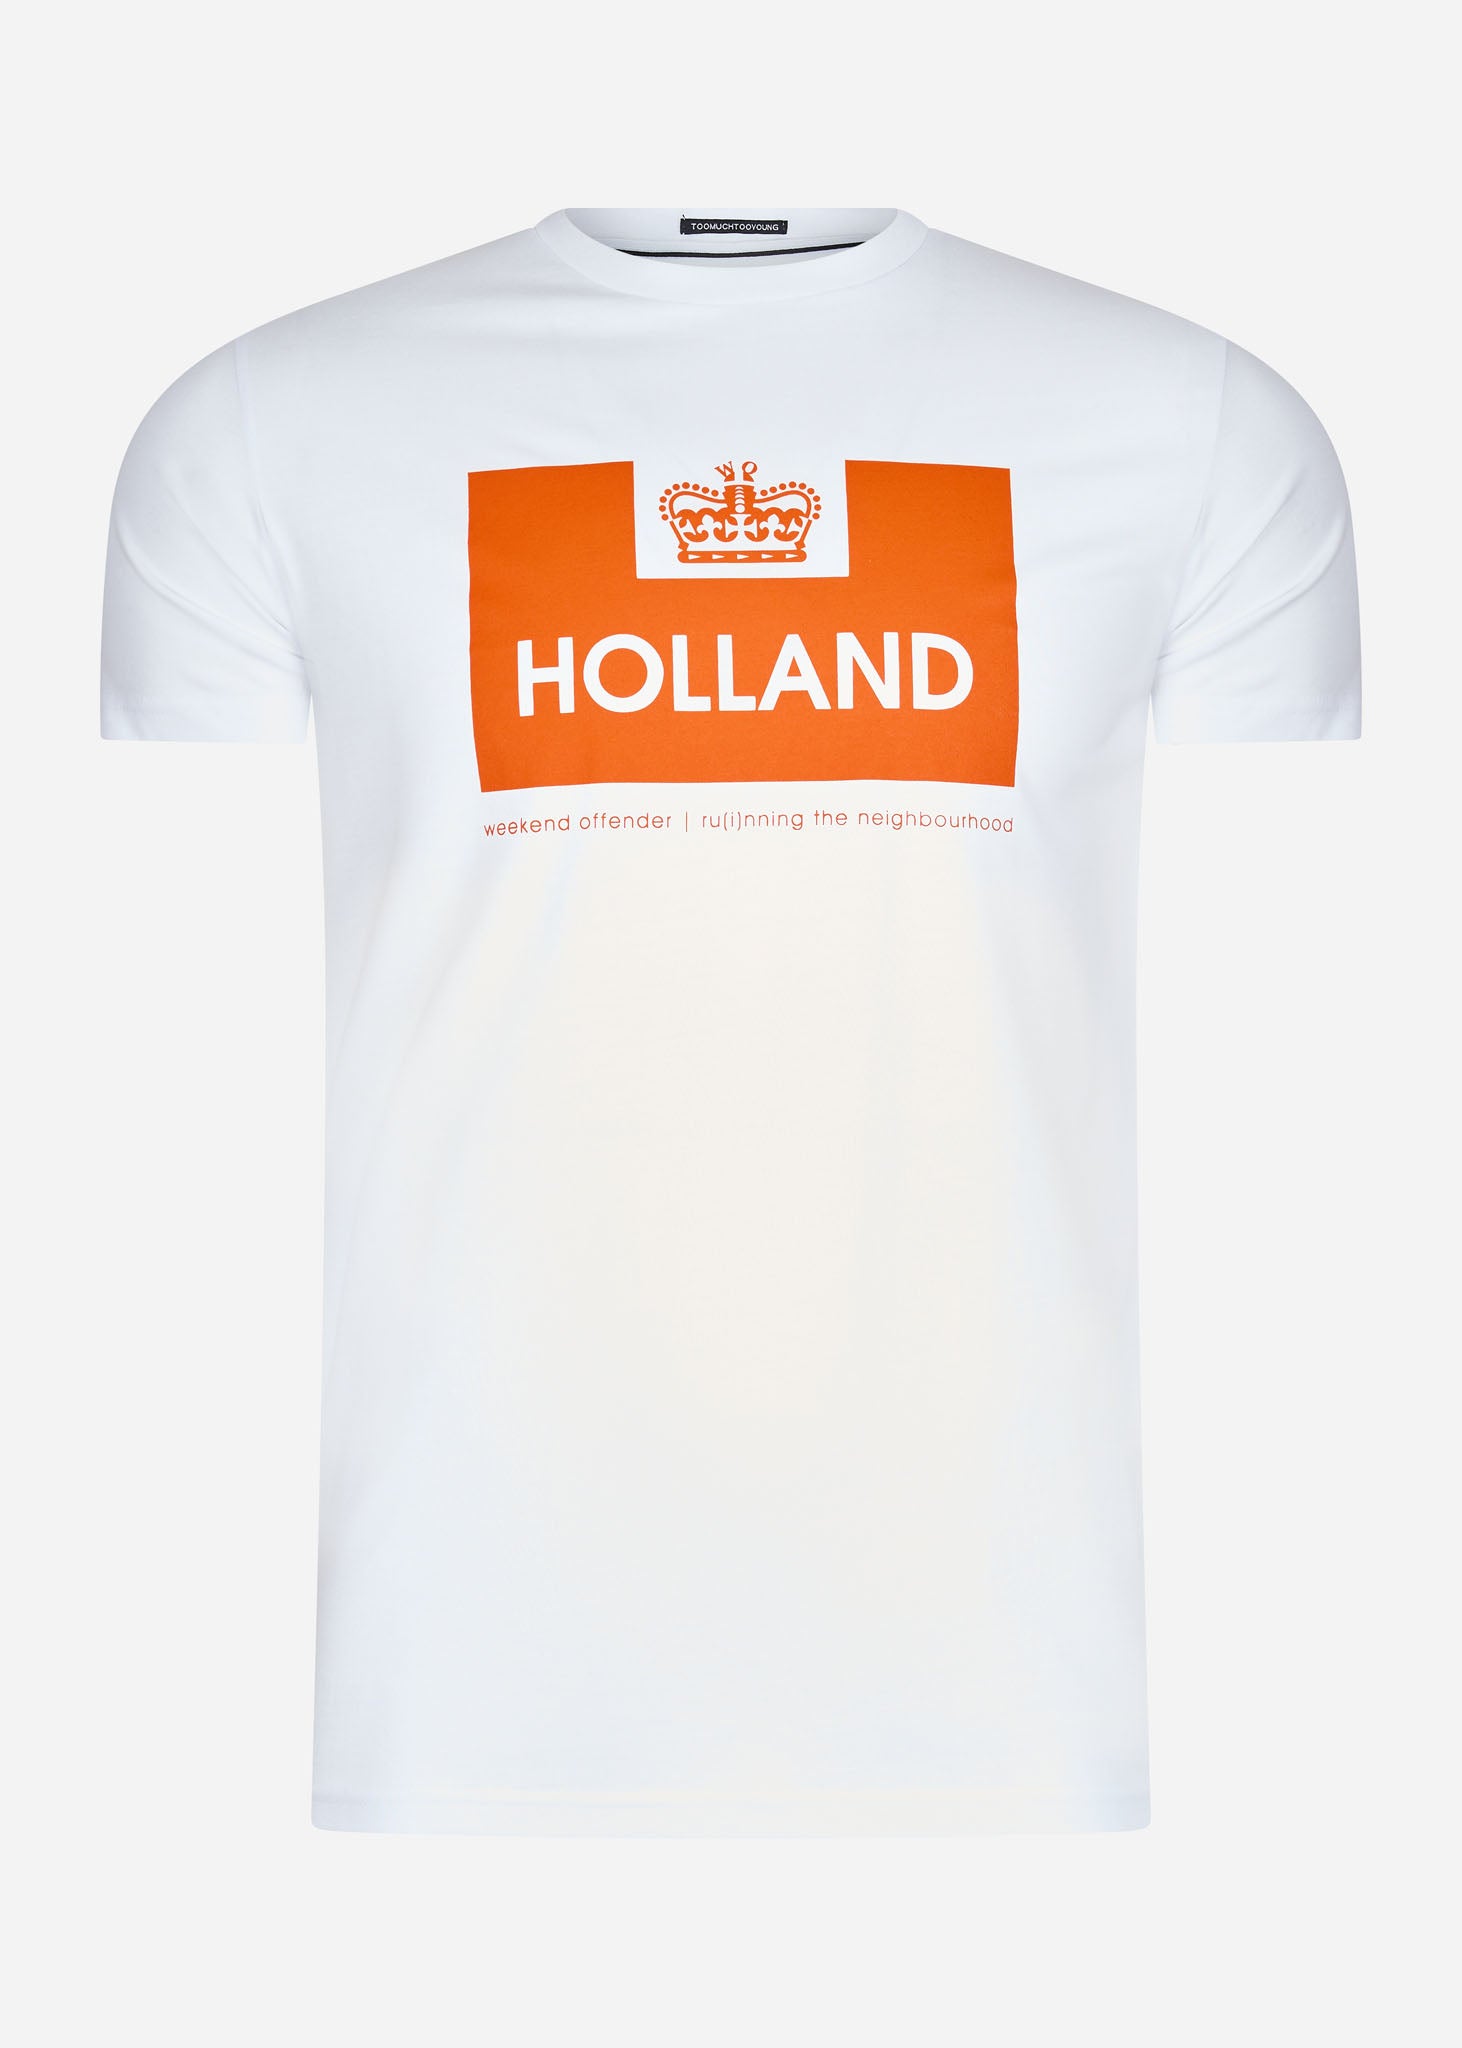 Weekend Offender Holland t-shirt white orange